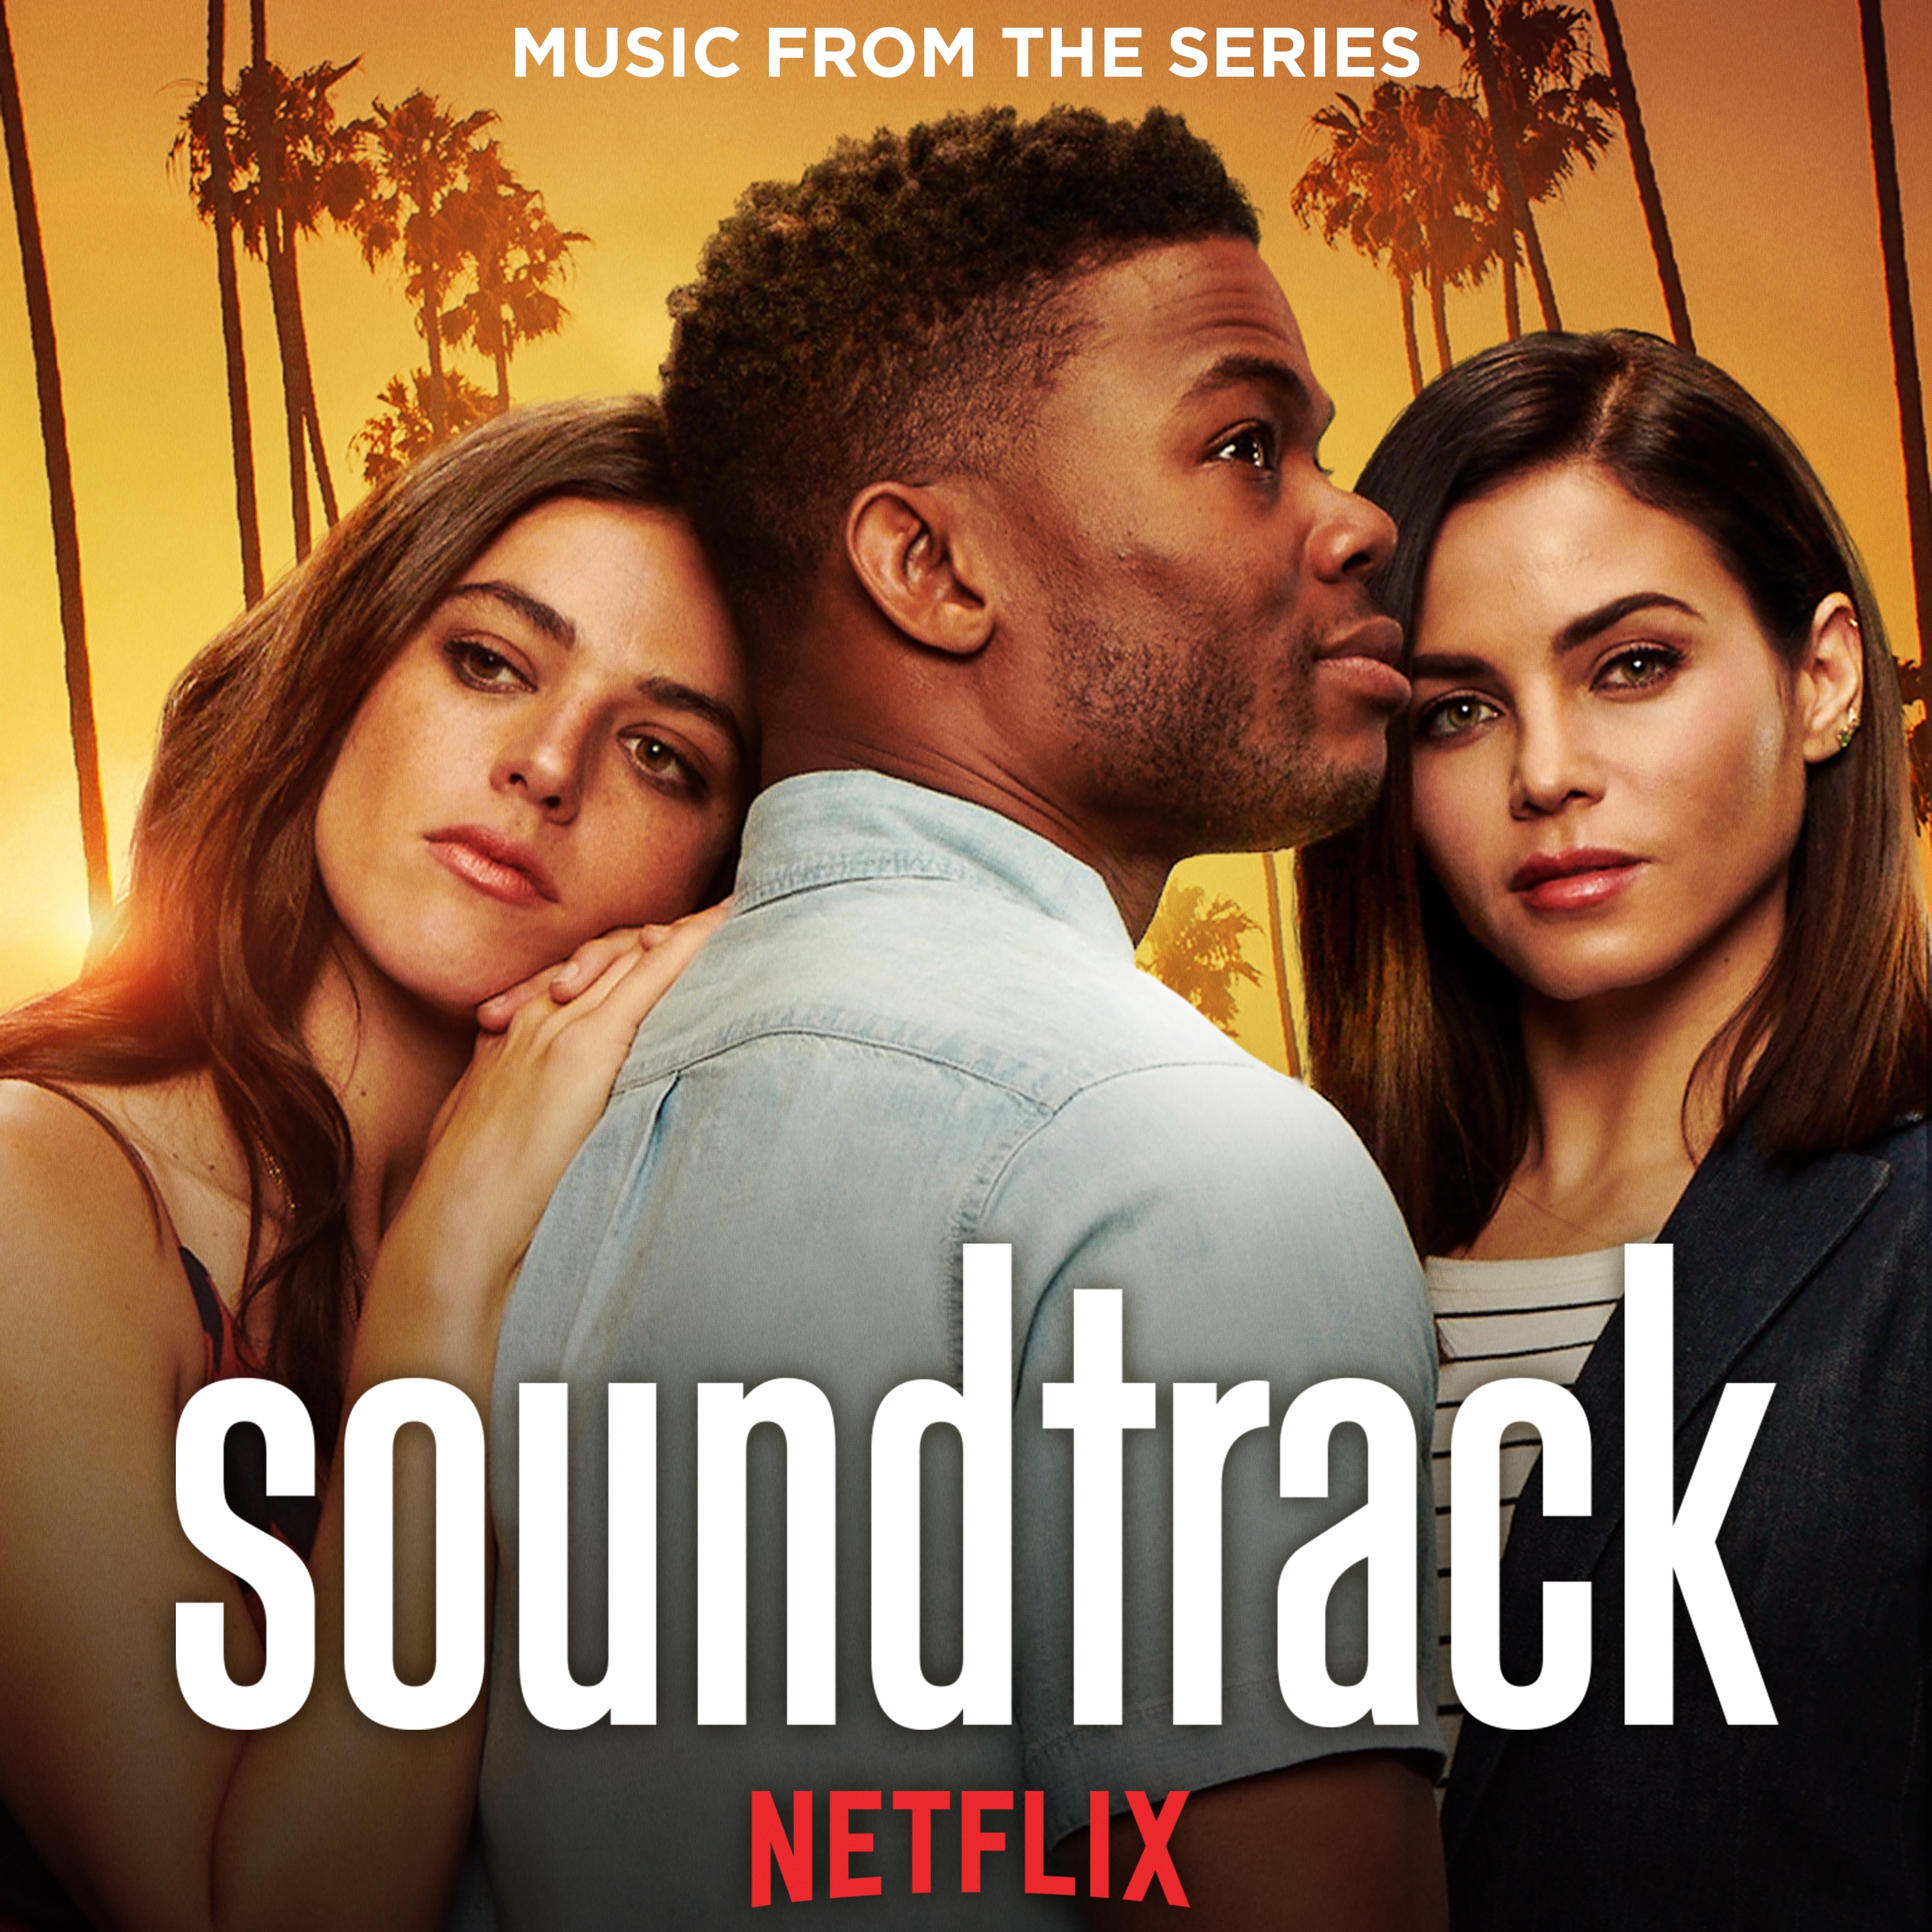 Qala Netflix Soundtrack. Soundtrack pacific